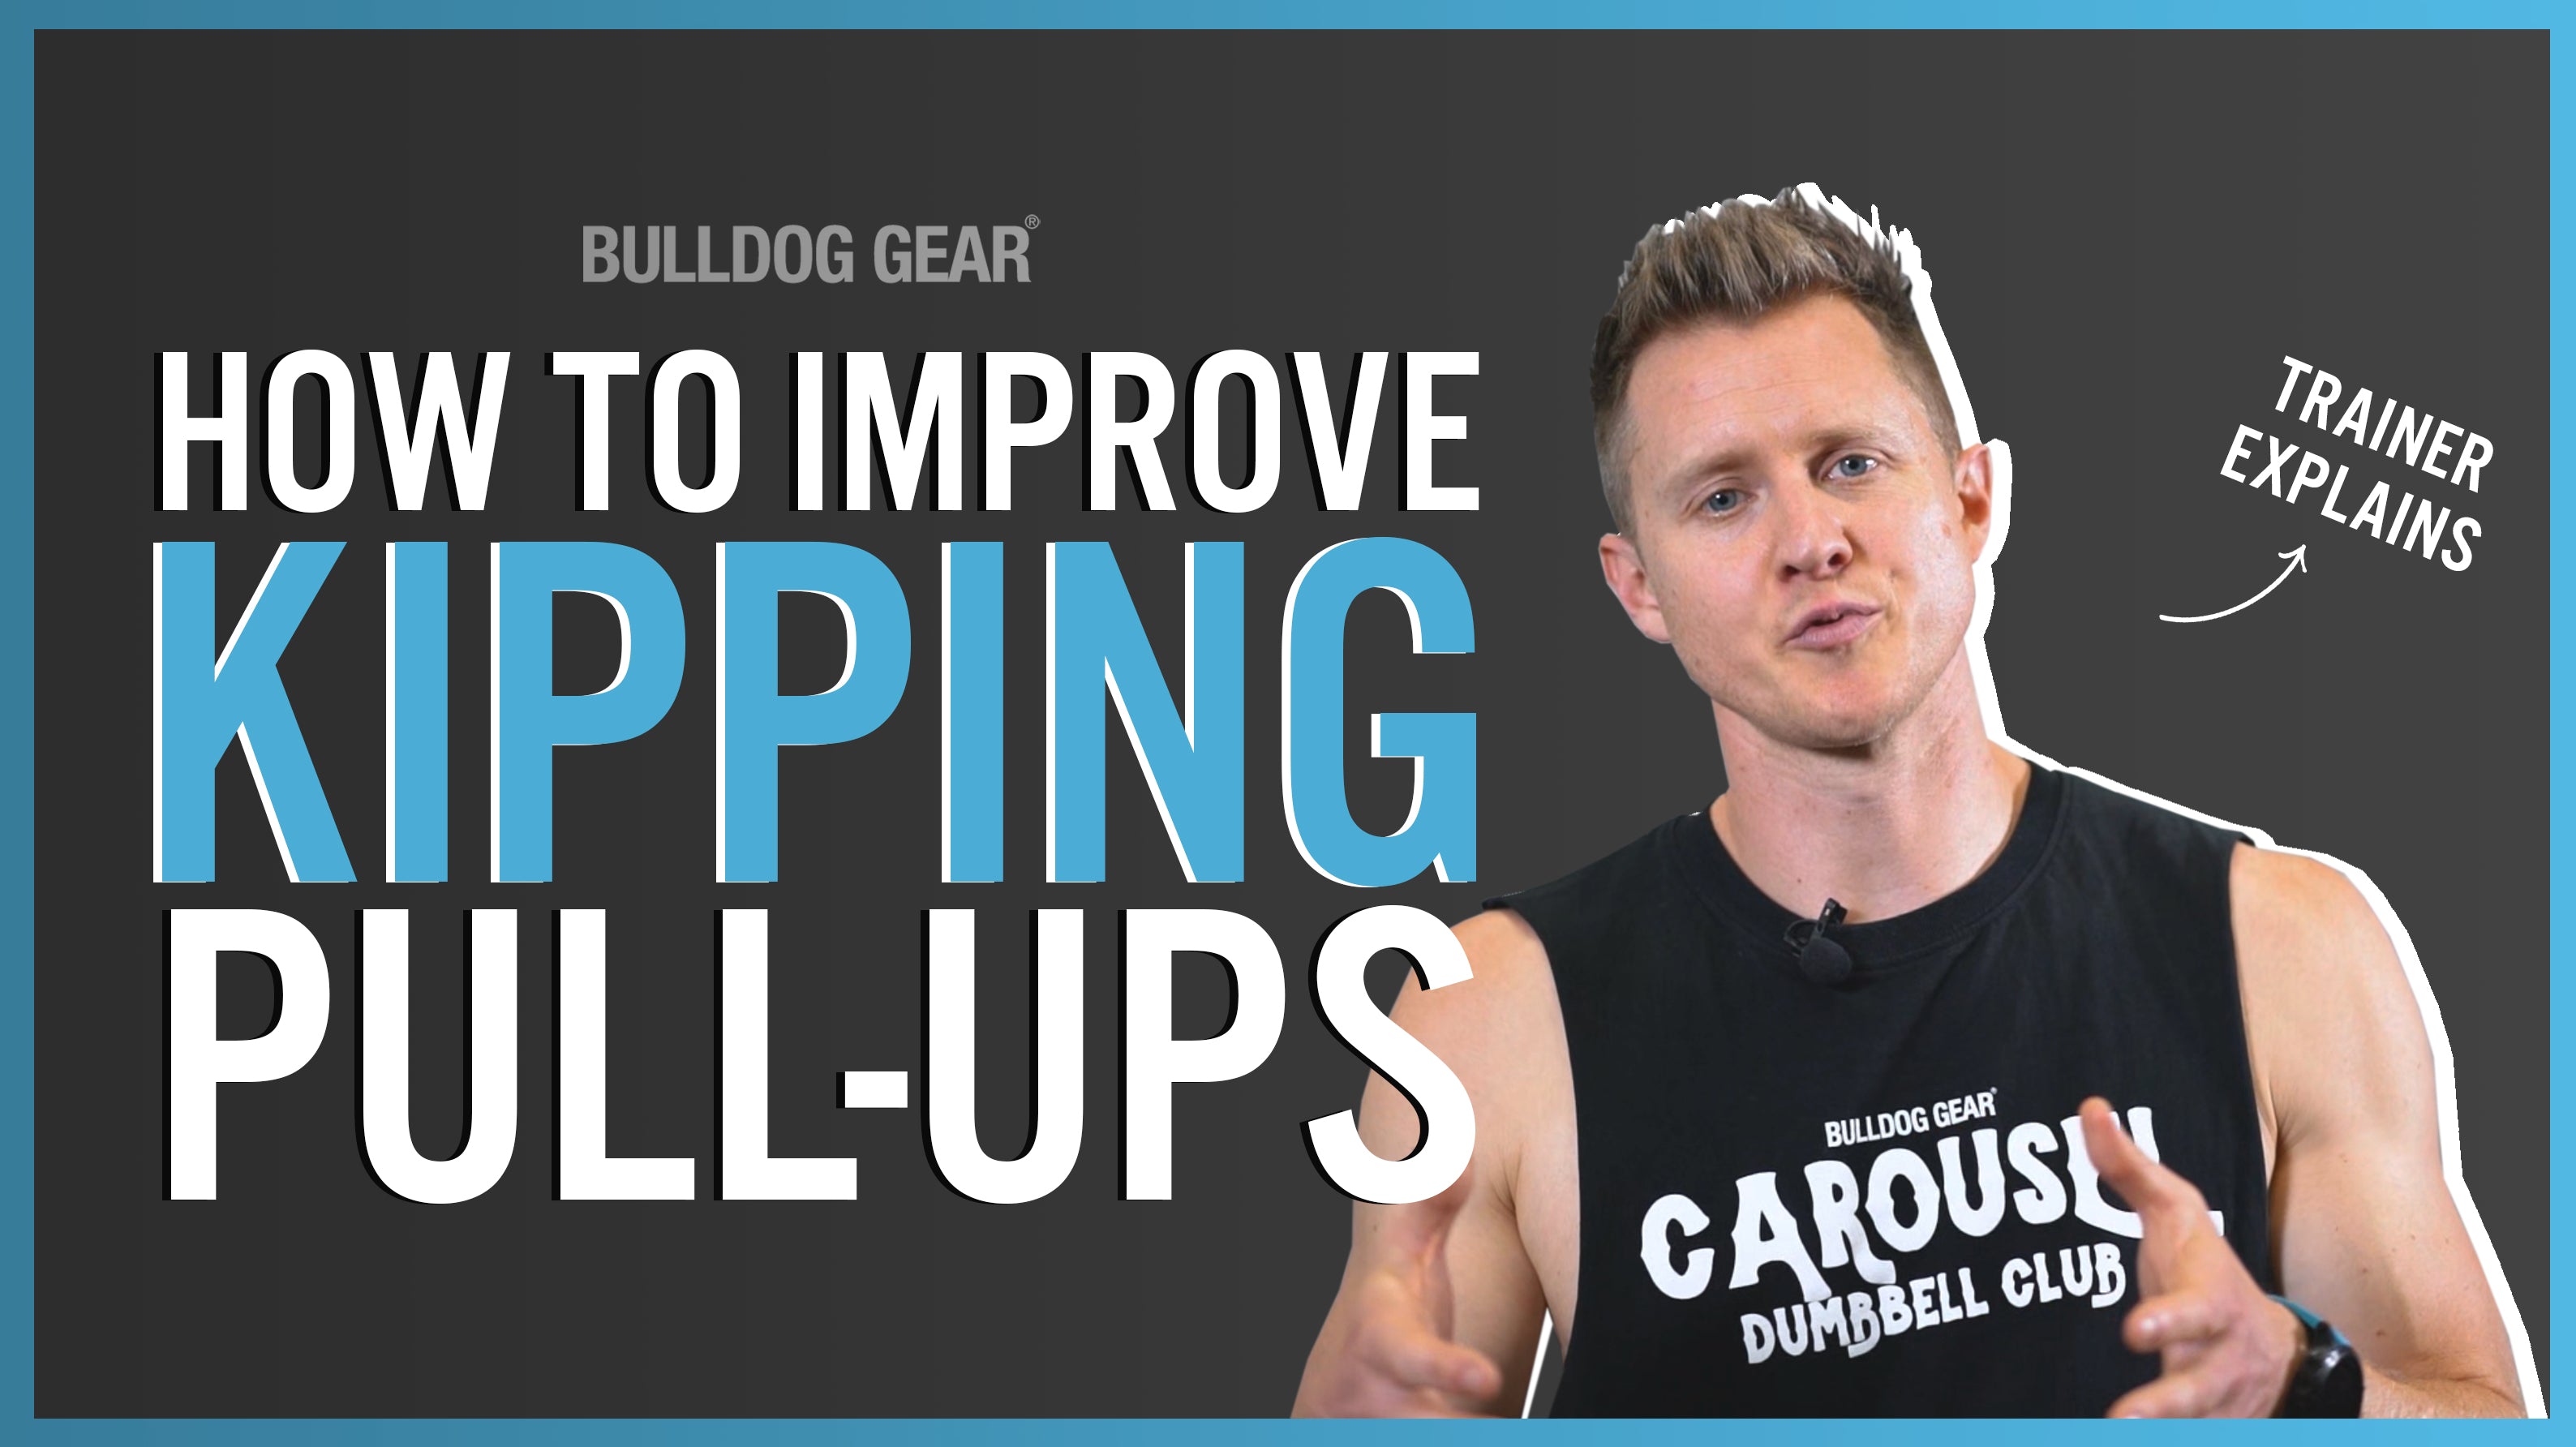 How Do I Get Better at Kipping Pull-Ups? Calisthenics Expert Explains